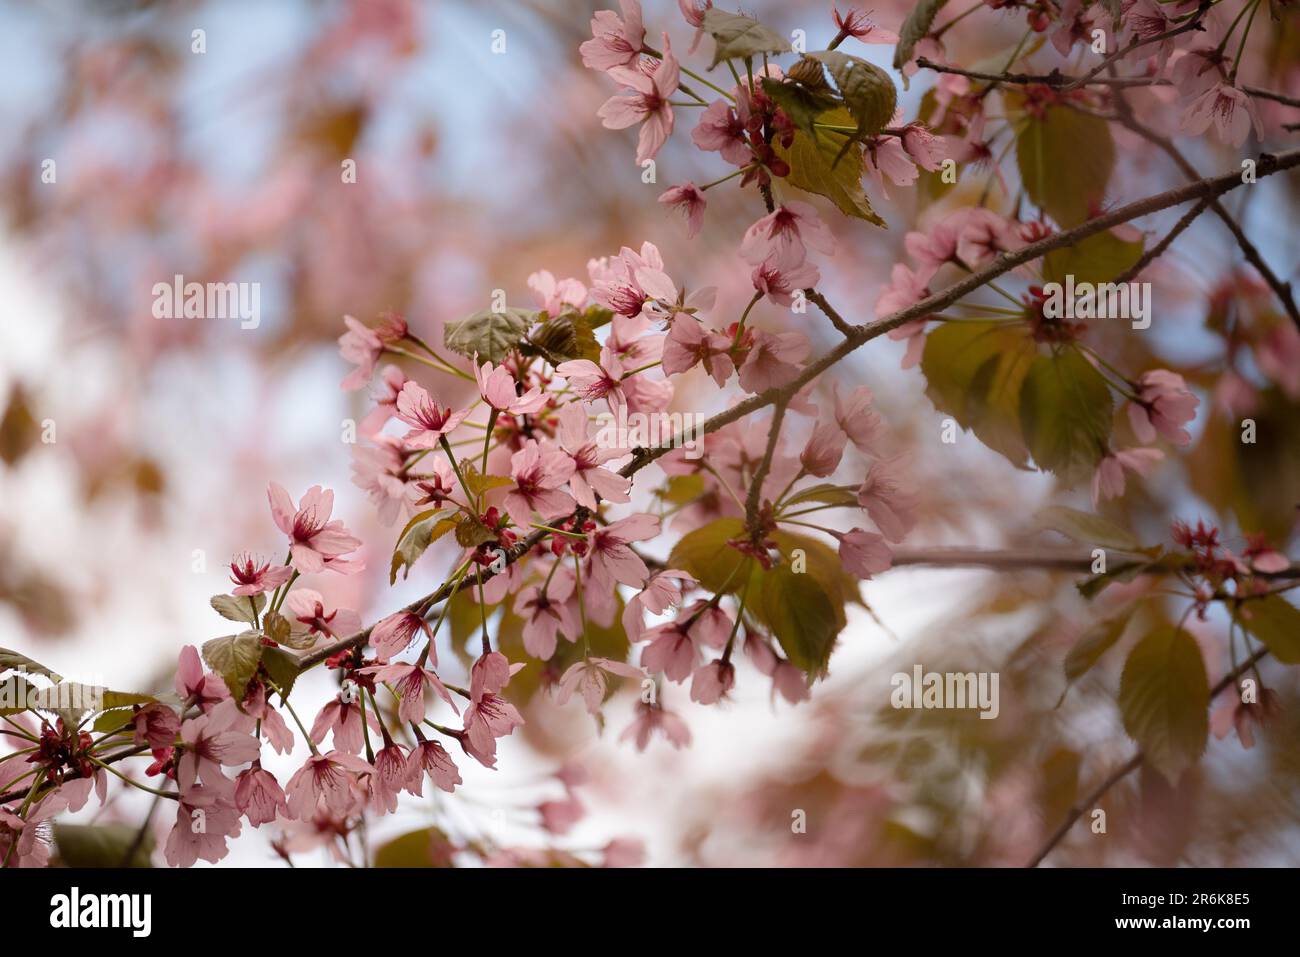 La delicata bellezza dei fiori di ciliegio rosa tenue sullo sfondo di un sereno cielo blu raffigura un incantevole fascino artistico della natura Foto Stock